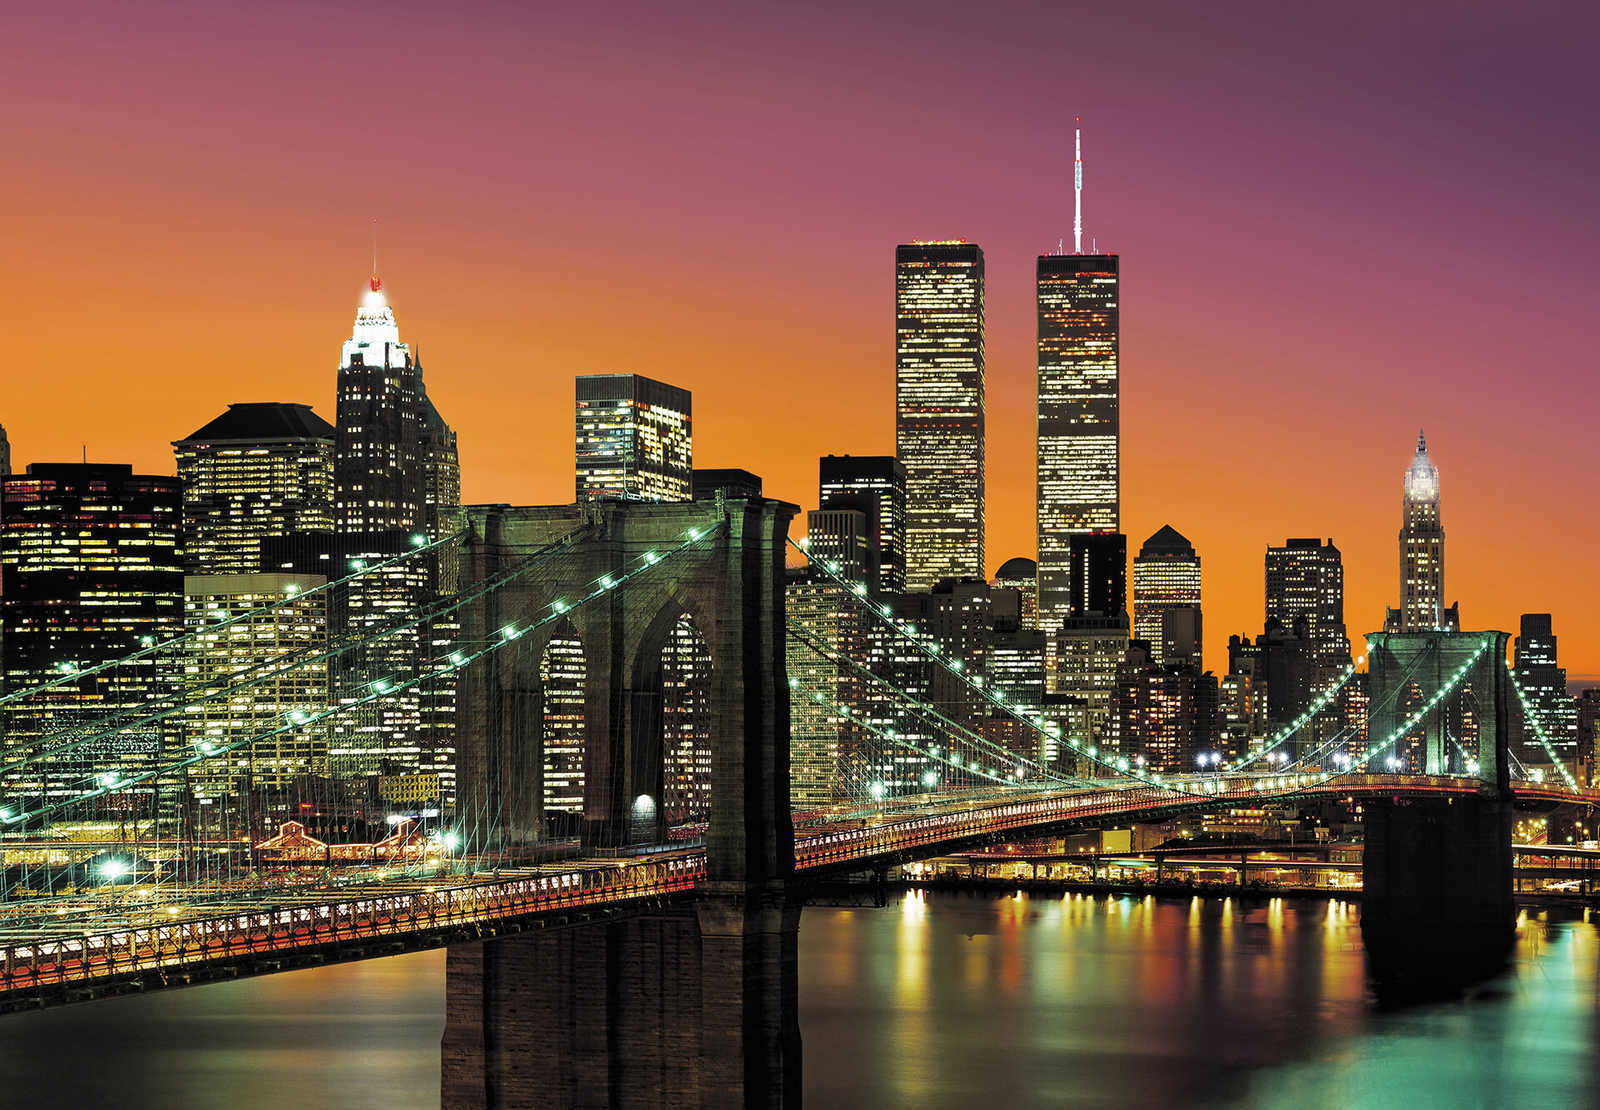 Fototapete New York City mit Retro Skyline Motiv
